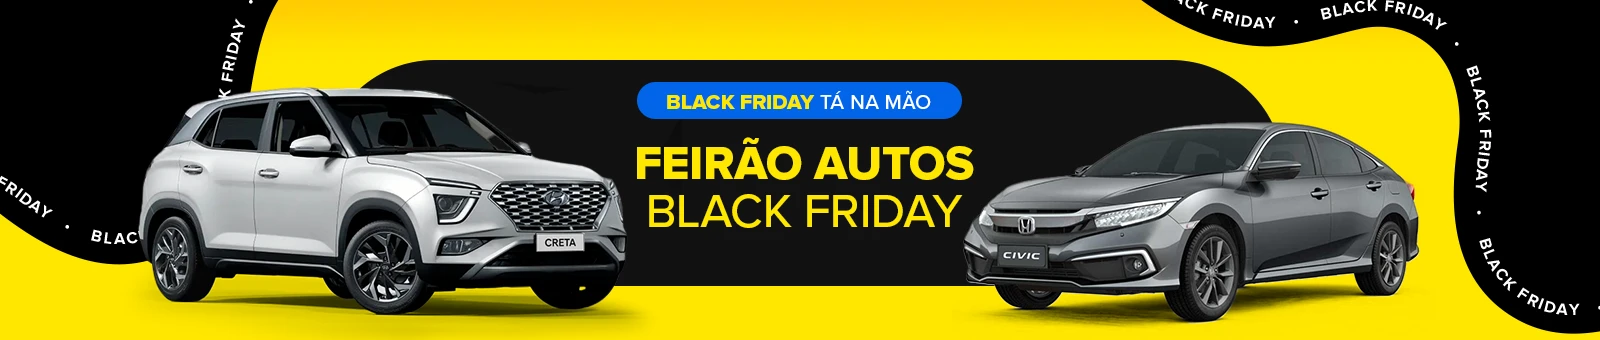 Black Friday, Feirao autos